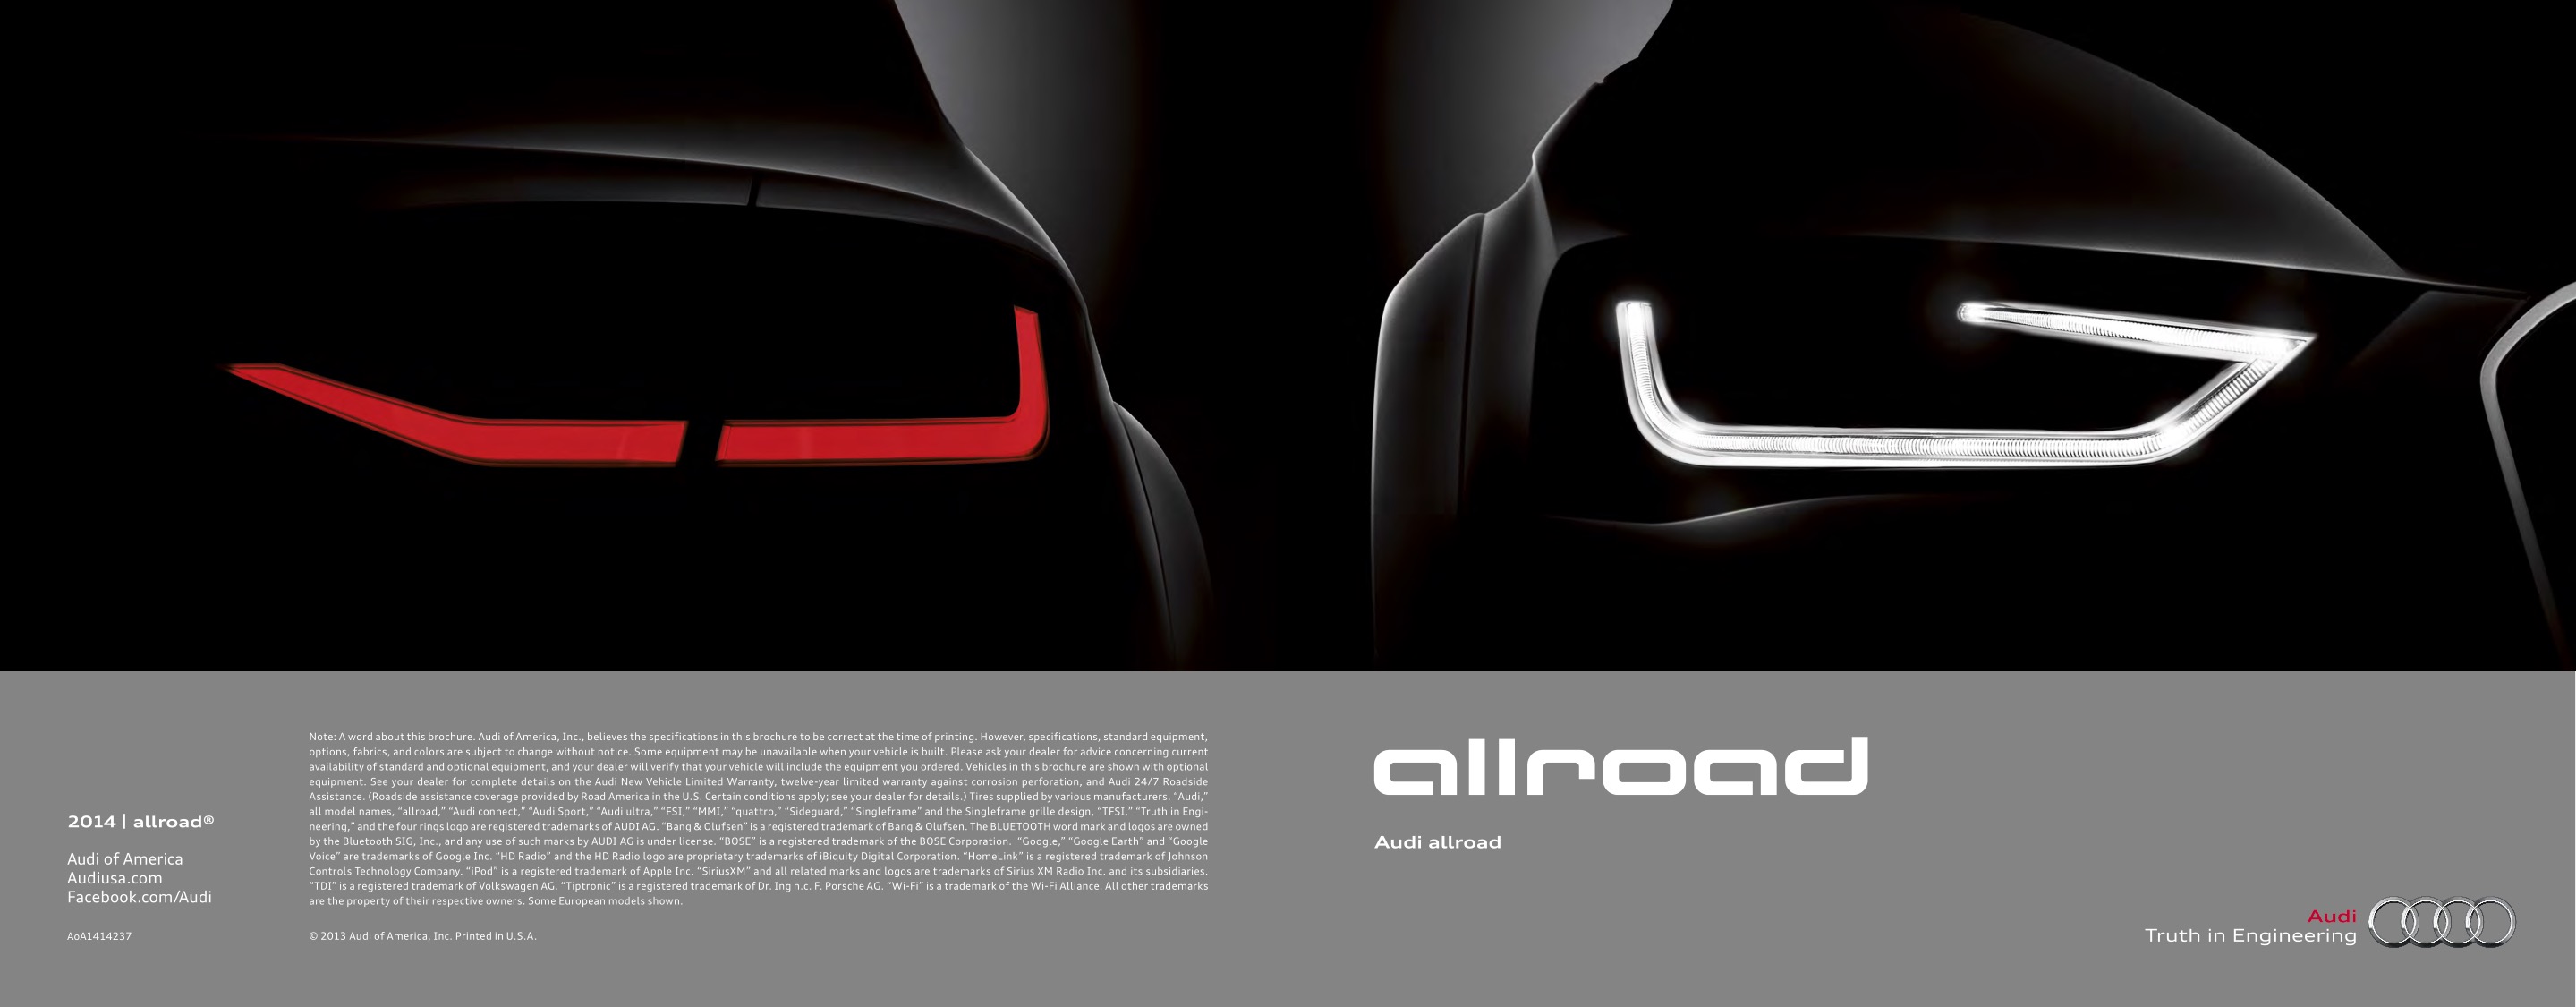 2014 Audi Allroad Brochure